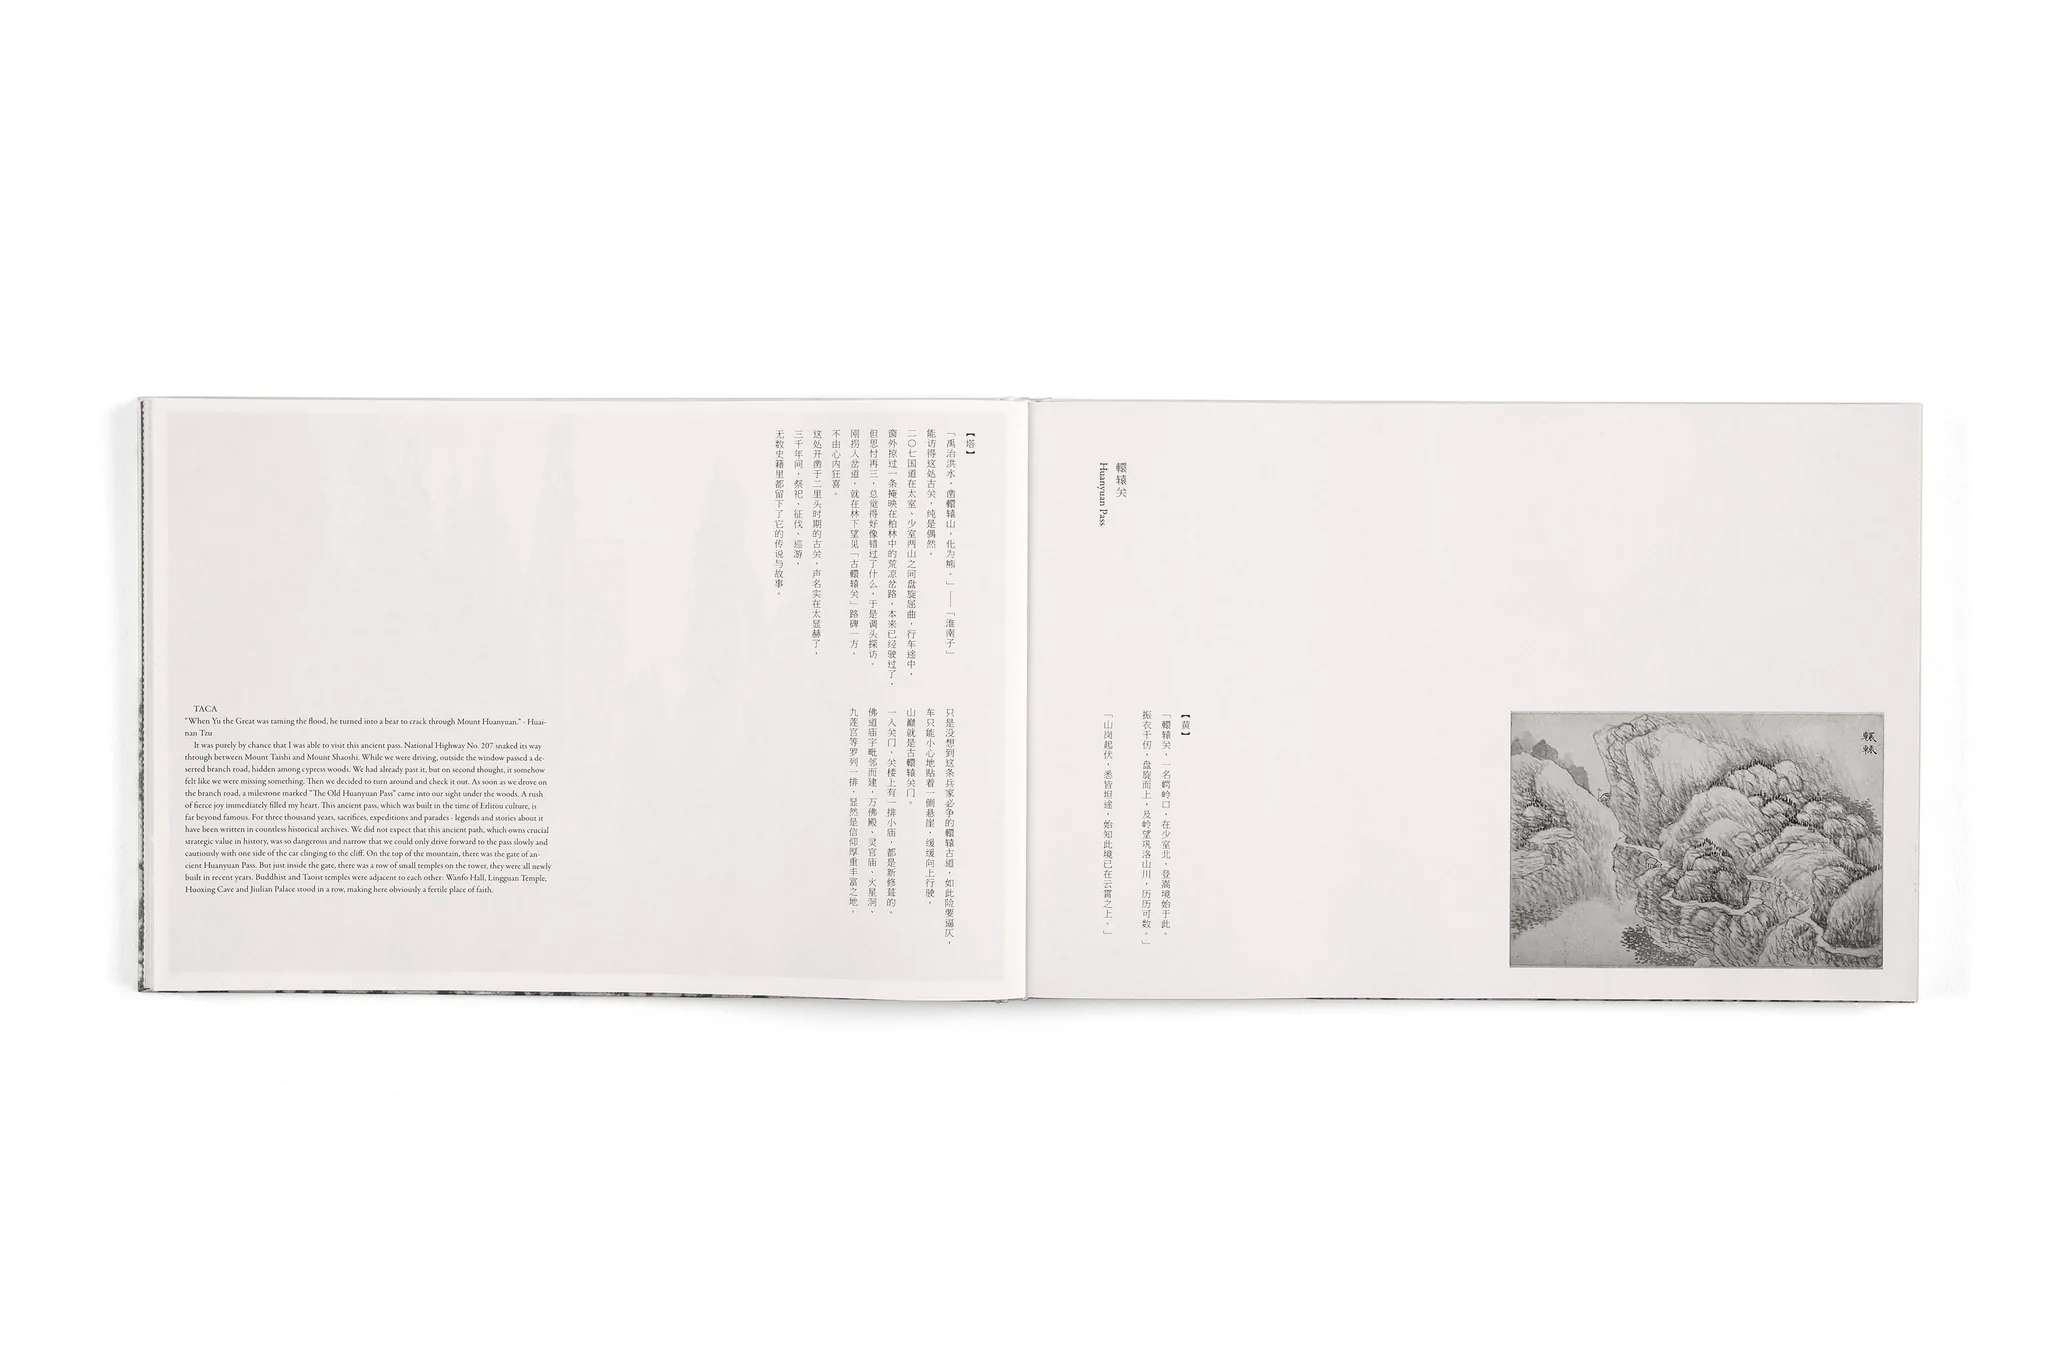 taca sui steles huangyi project E7A7485 1024x1024 2x - Taca Sui - Steles - Huang Yi Project | Taca Sui - Steles - Huang Yi Project - Special Edition |  - Taca Sui - Steles - Huang Yi Project